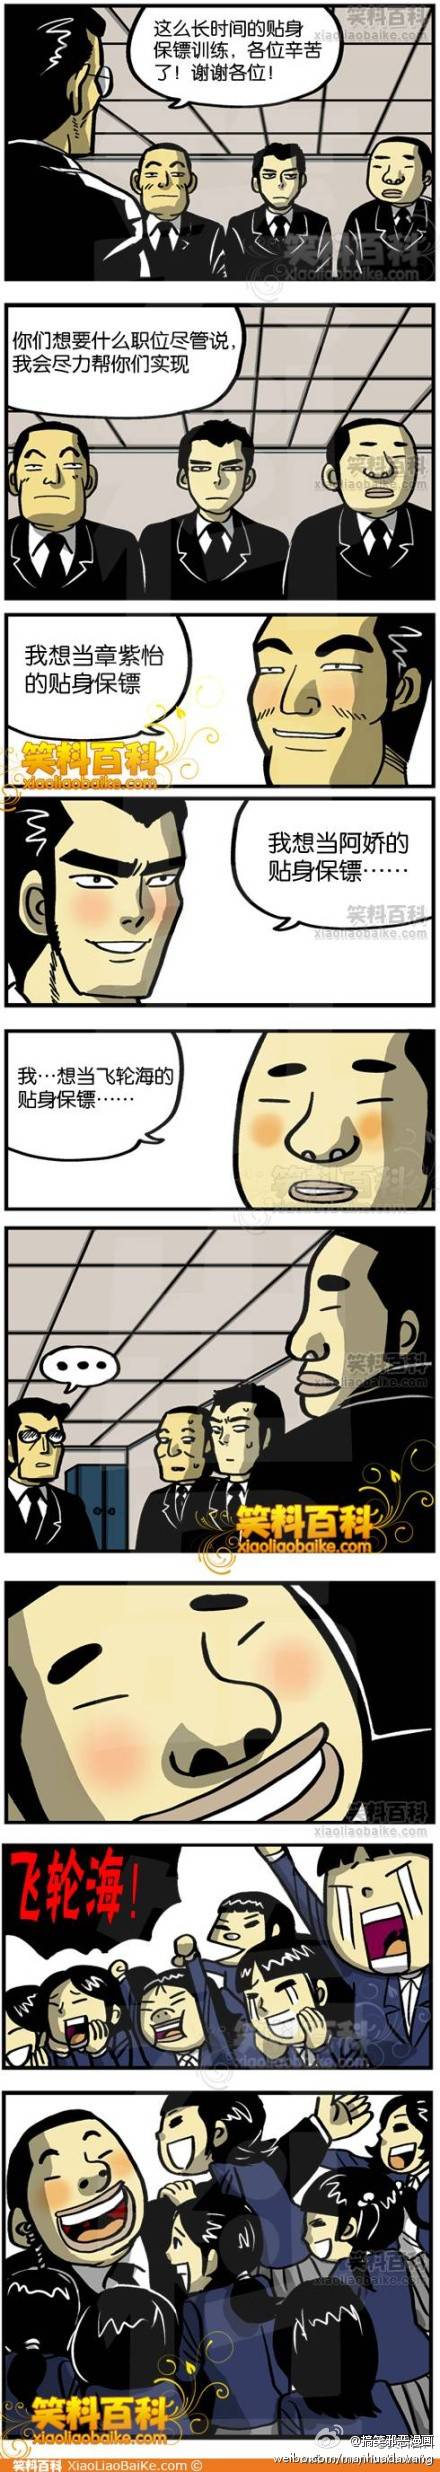 邪恶漫画爆笑囧图第25刊：破门而入